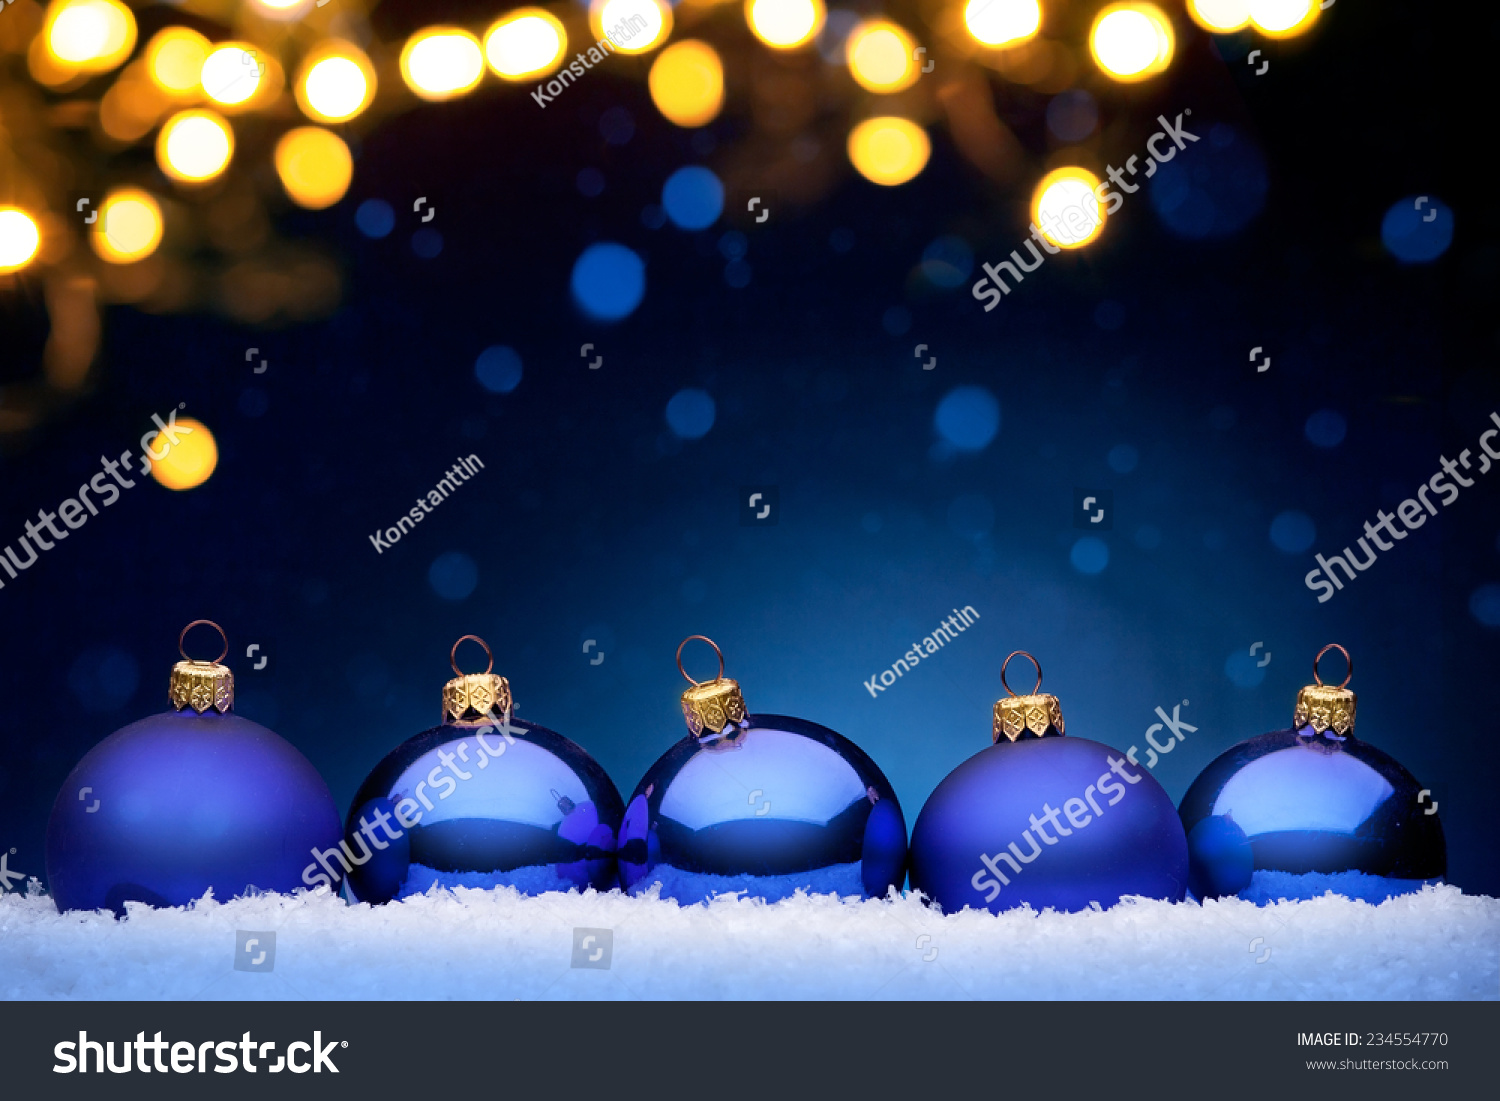 Christmas Night Stock Photo 234554770 : Shutterstock